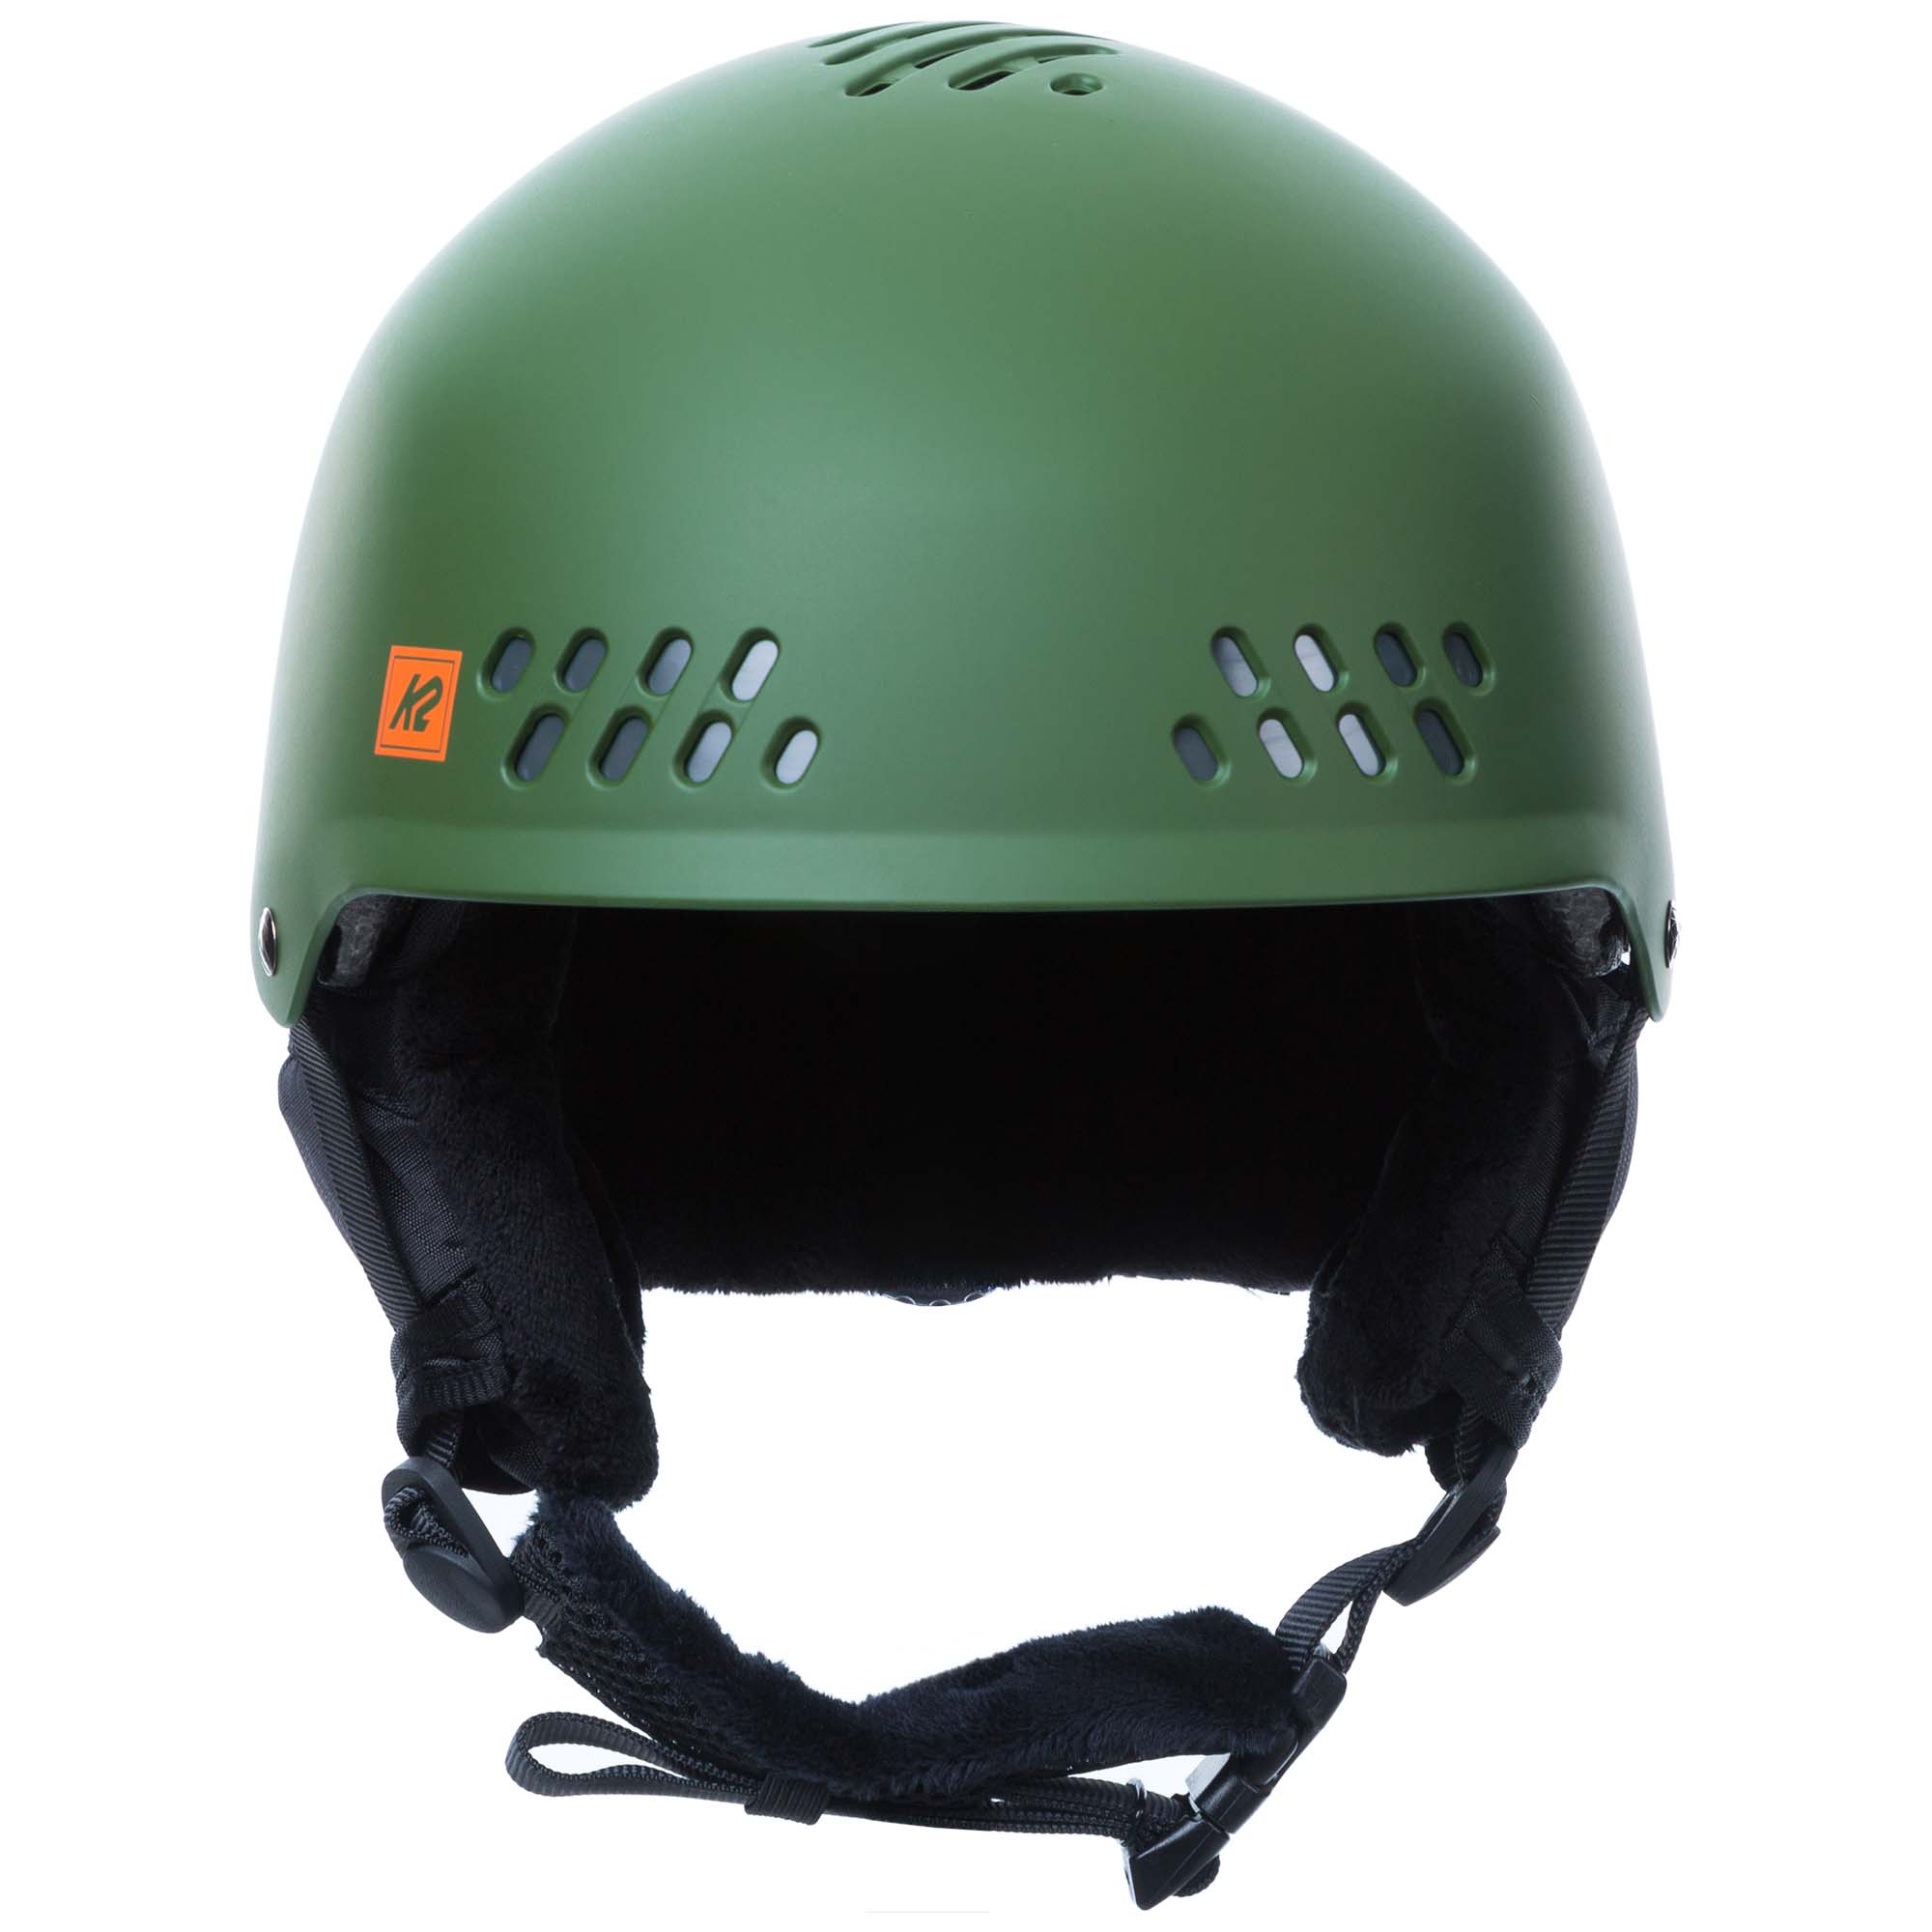 K2 Phase Pro Ski/Snowboard Helmet